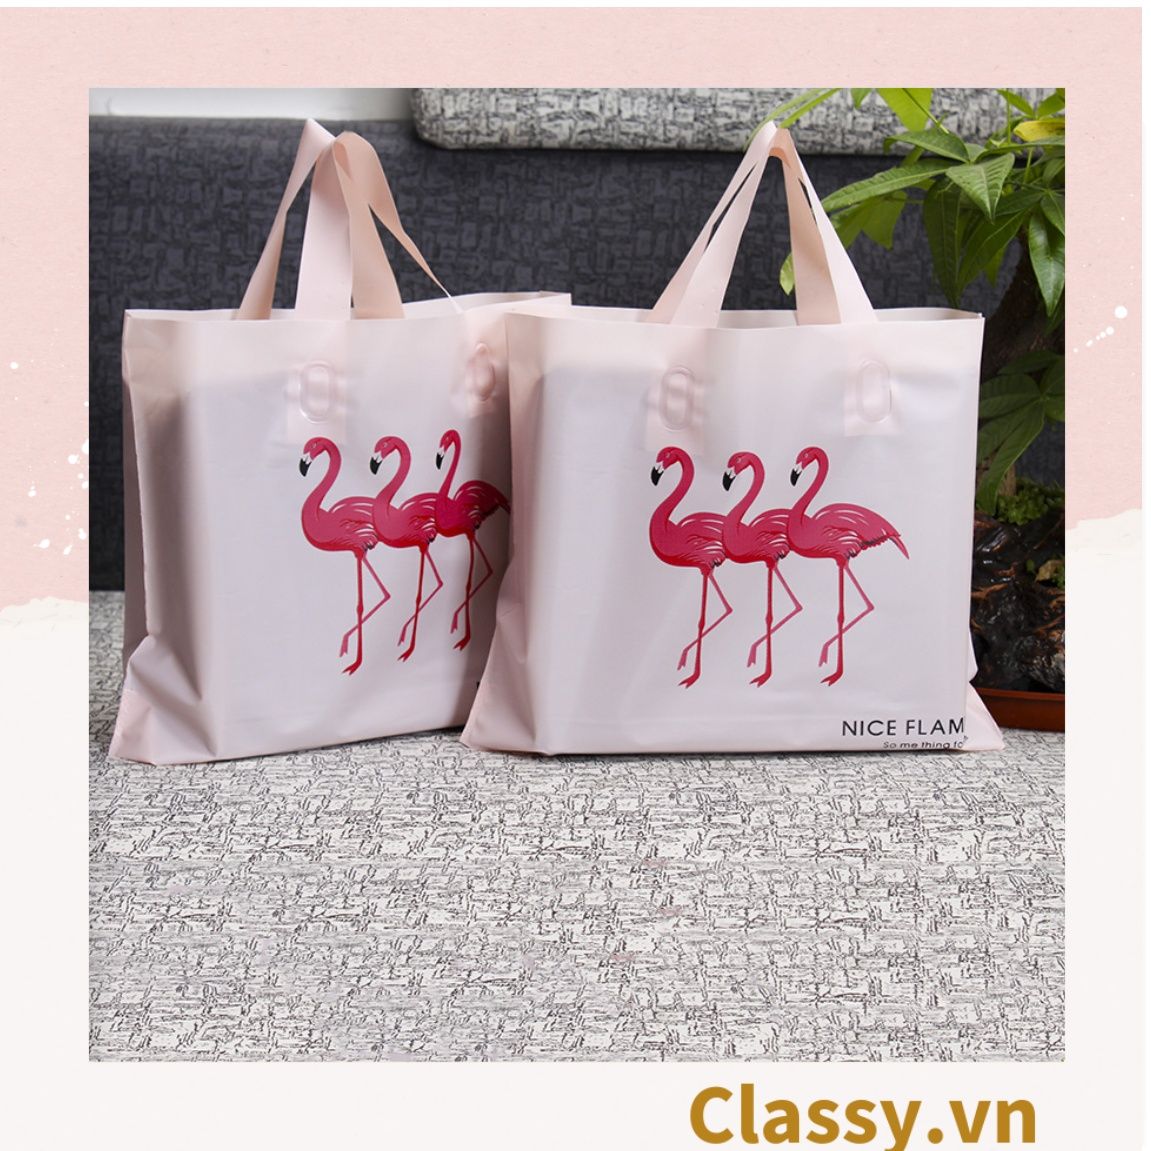  Túi tote hồng hạc bằng nhựa nhiều size, màu hồng, không ra màu T1360 